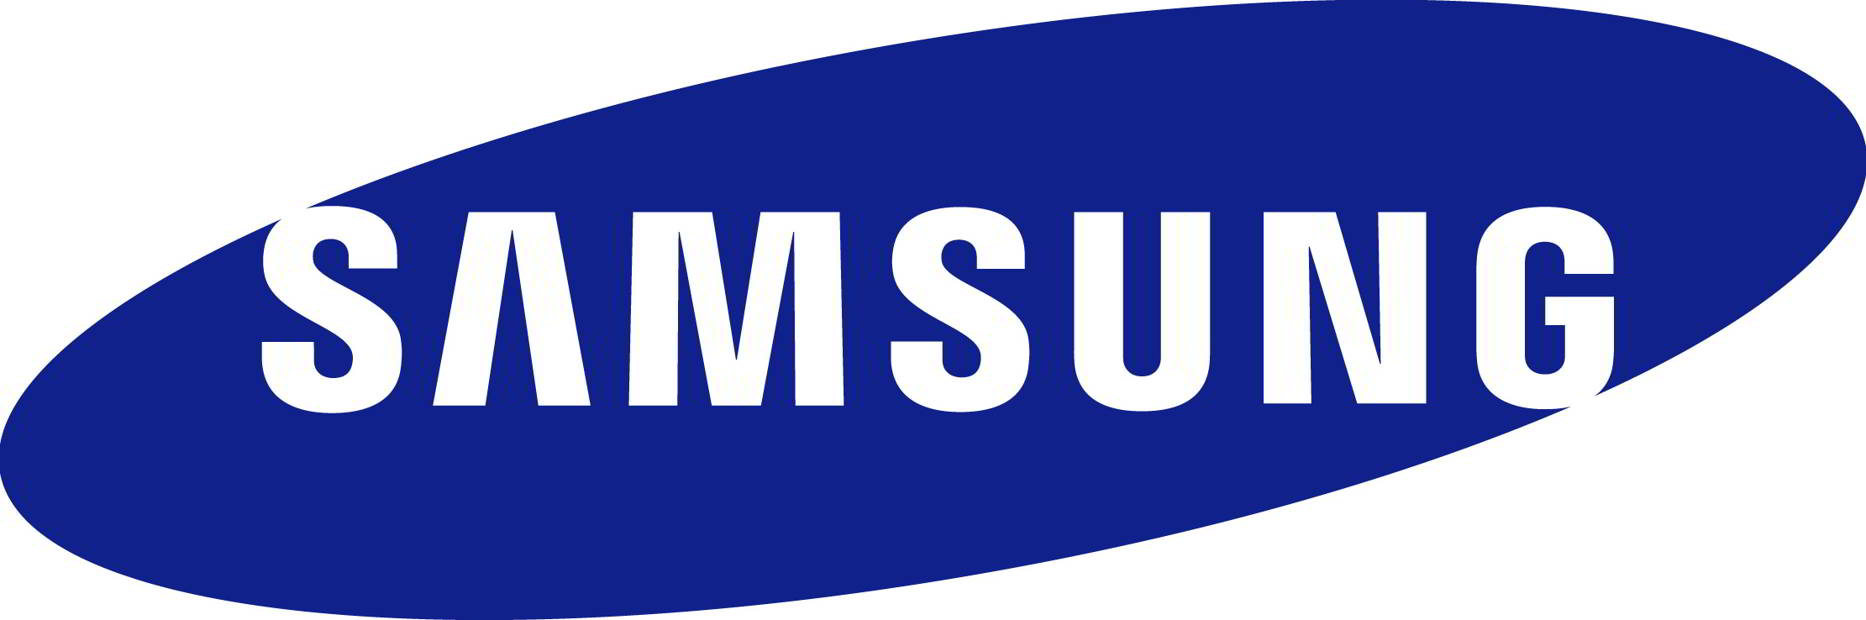 Samsung logo featured